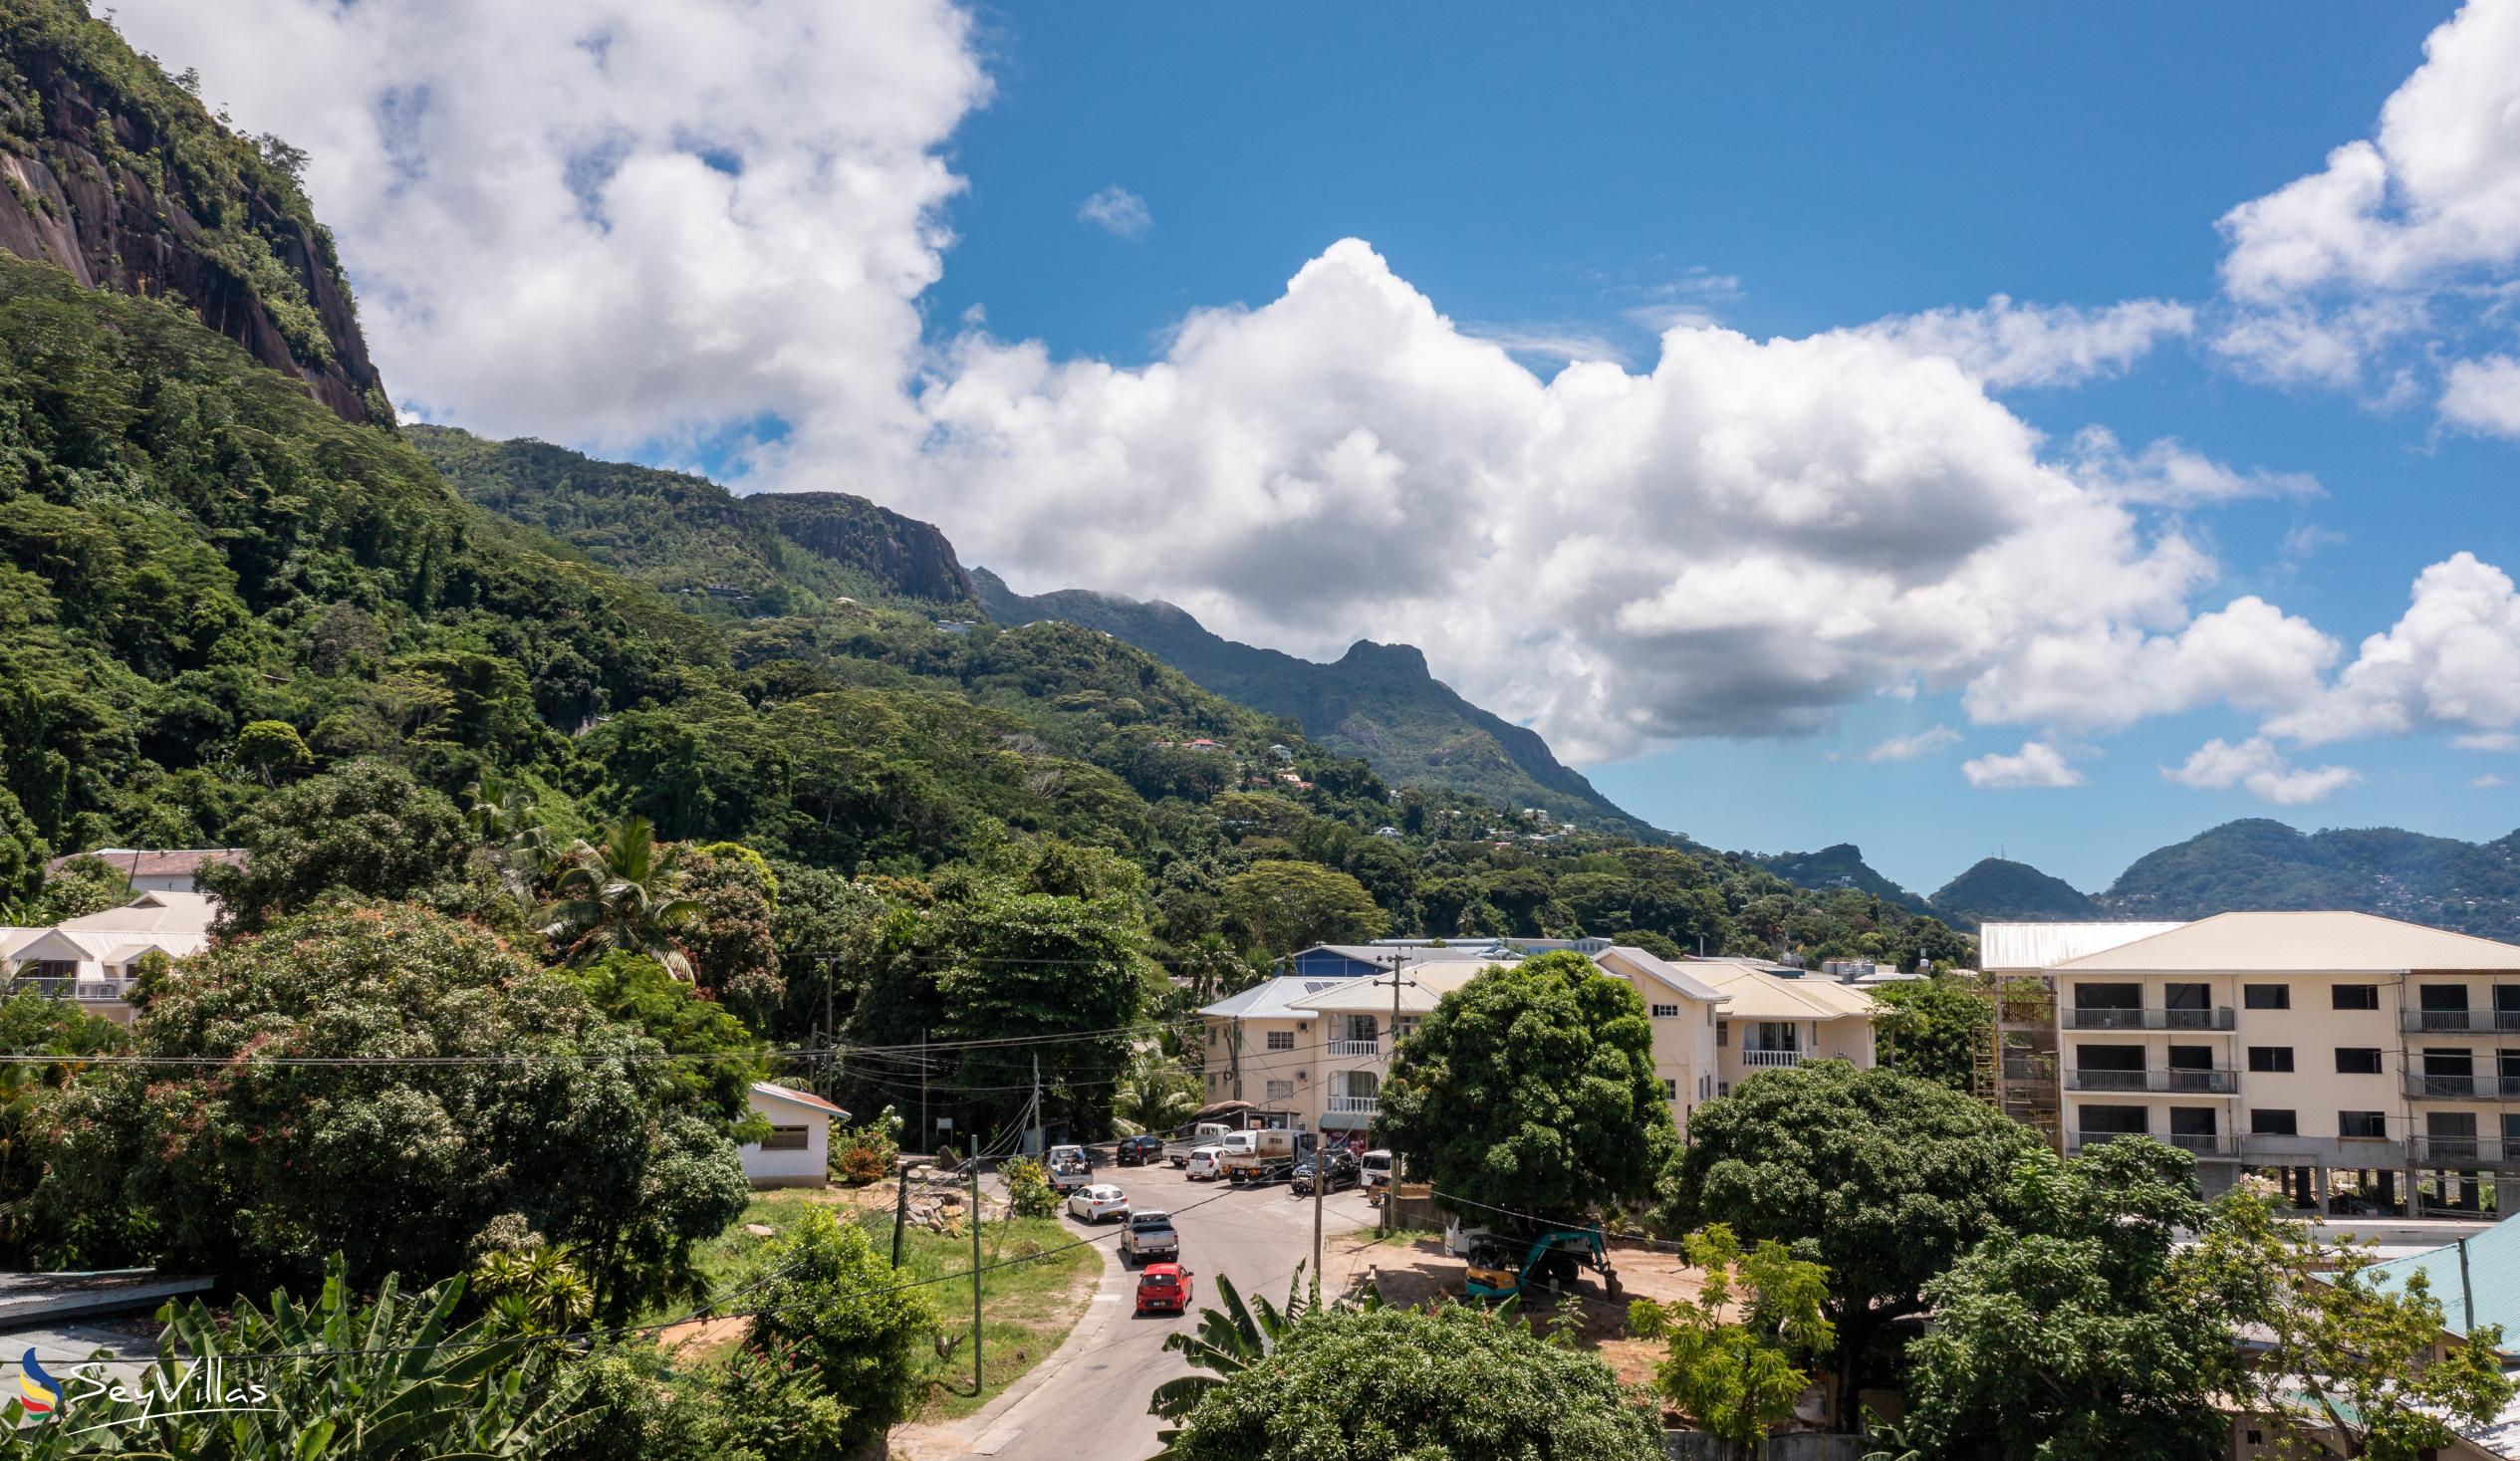 Foto 17: Effie's Mountain View Villas - Lage - Mahé (Seychellen)